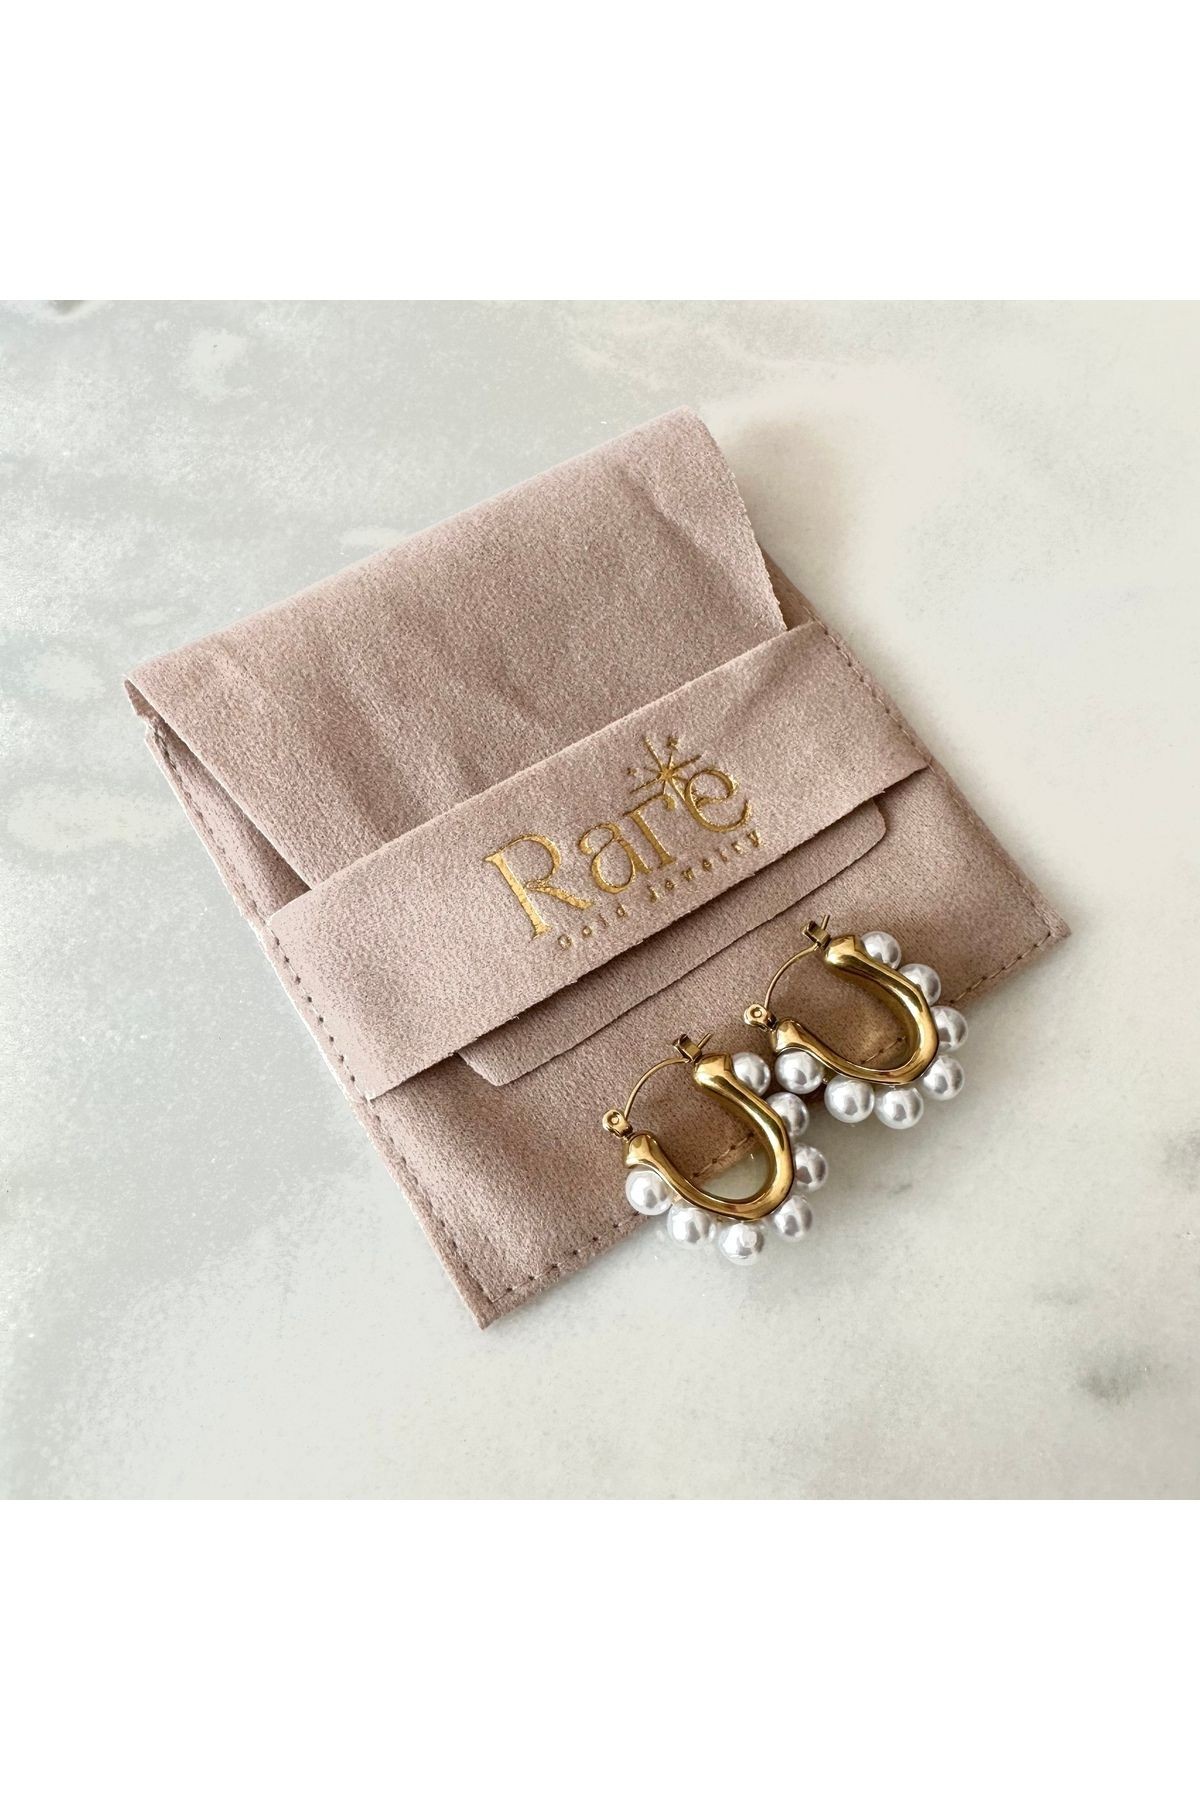 Steel Hoop Earrings with Rows of Pearls Gold